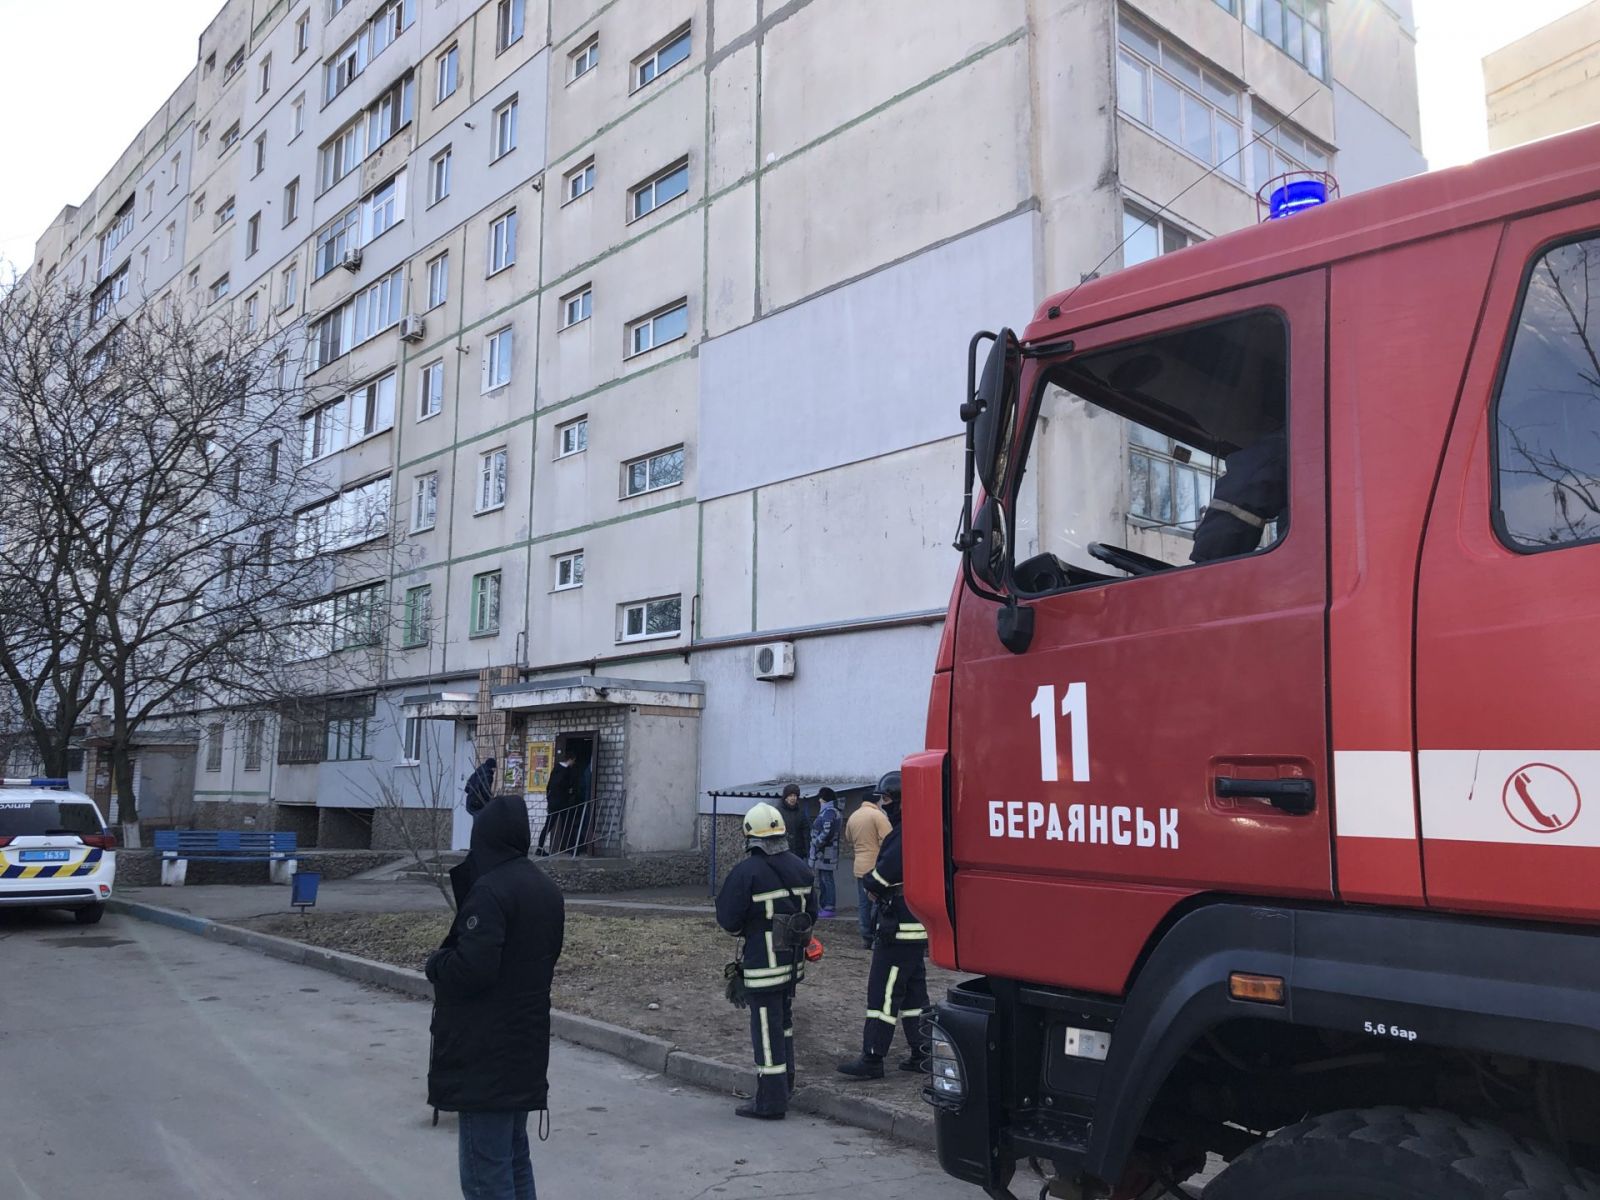 Взрыв прогремел во многоэтажке Бердянска, есть жертвы, фото — Бердянск24